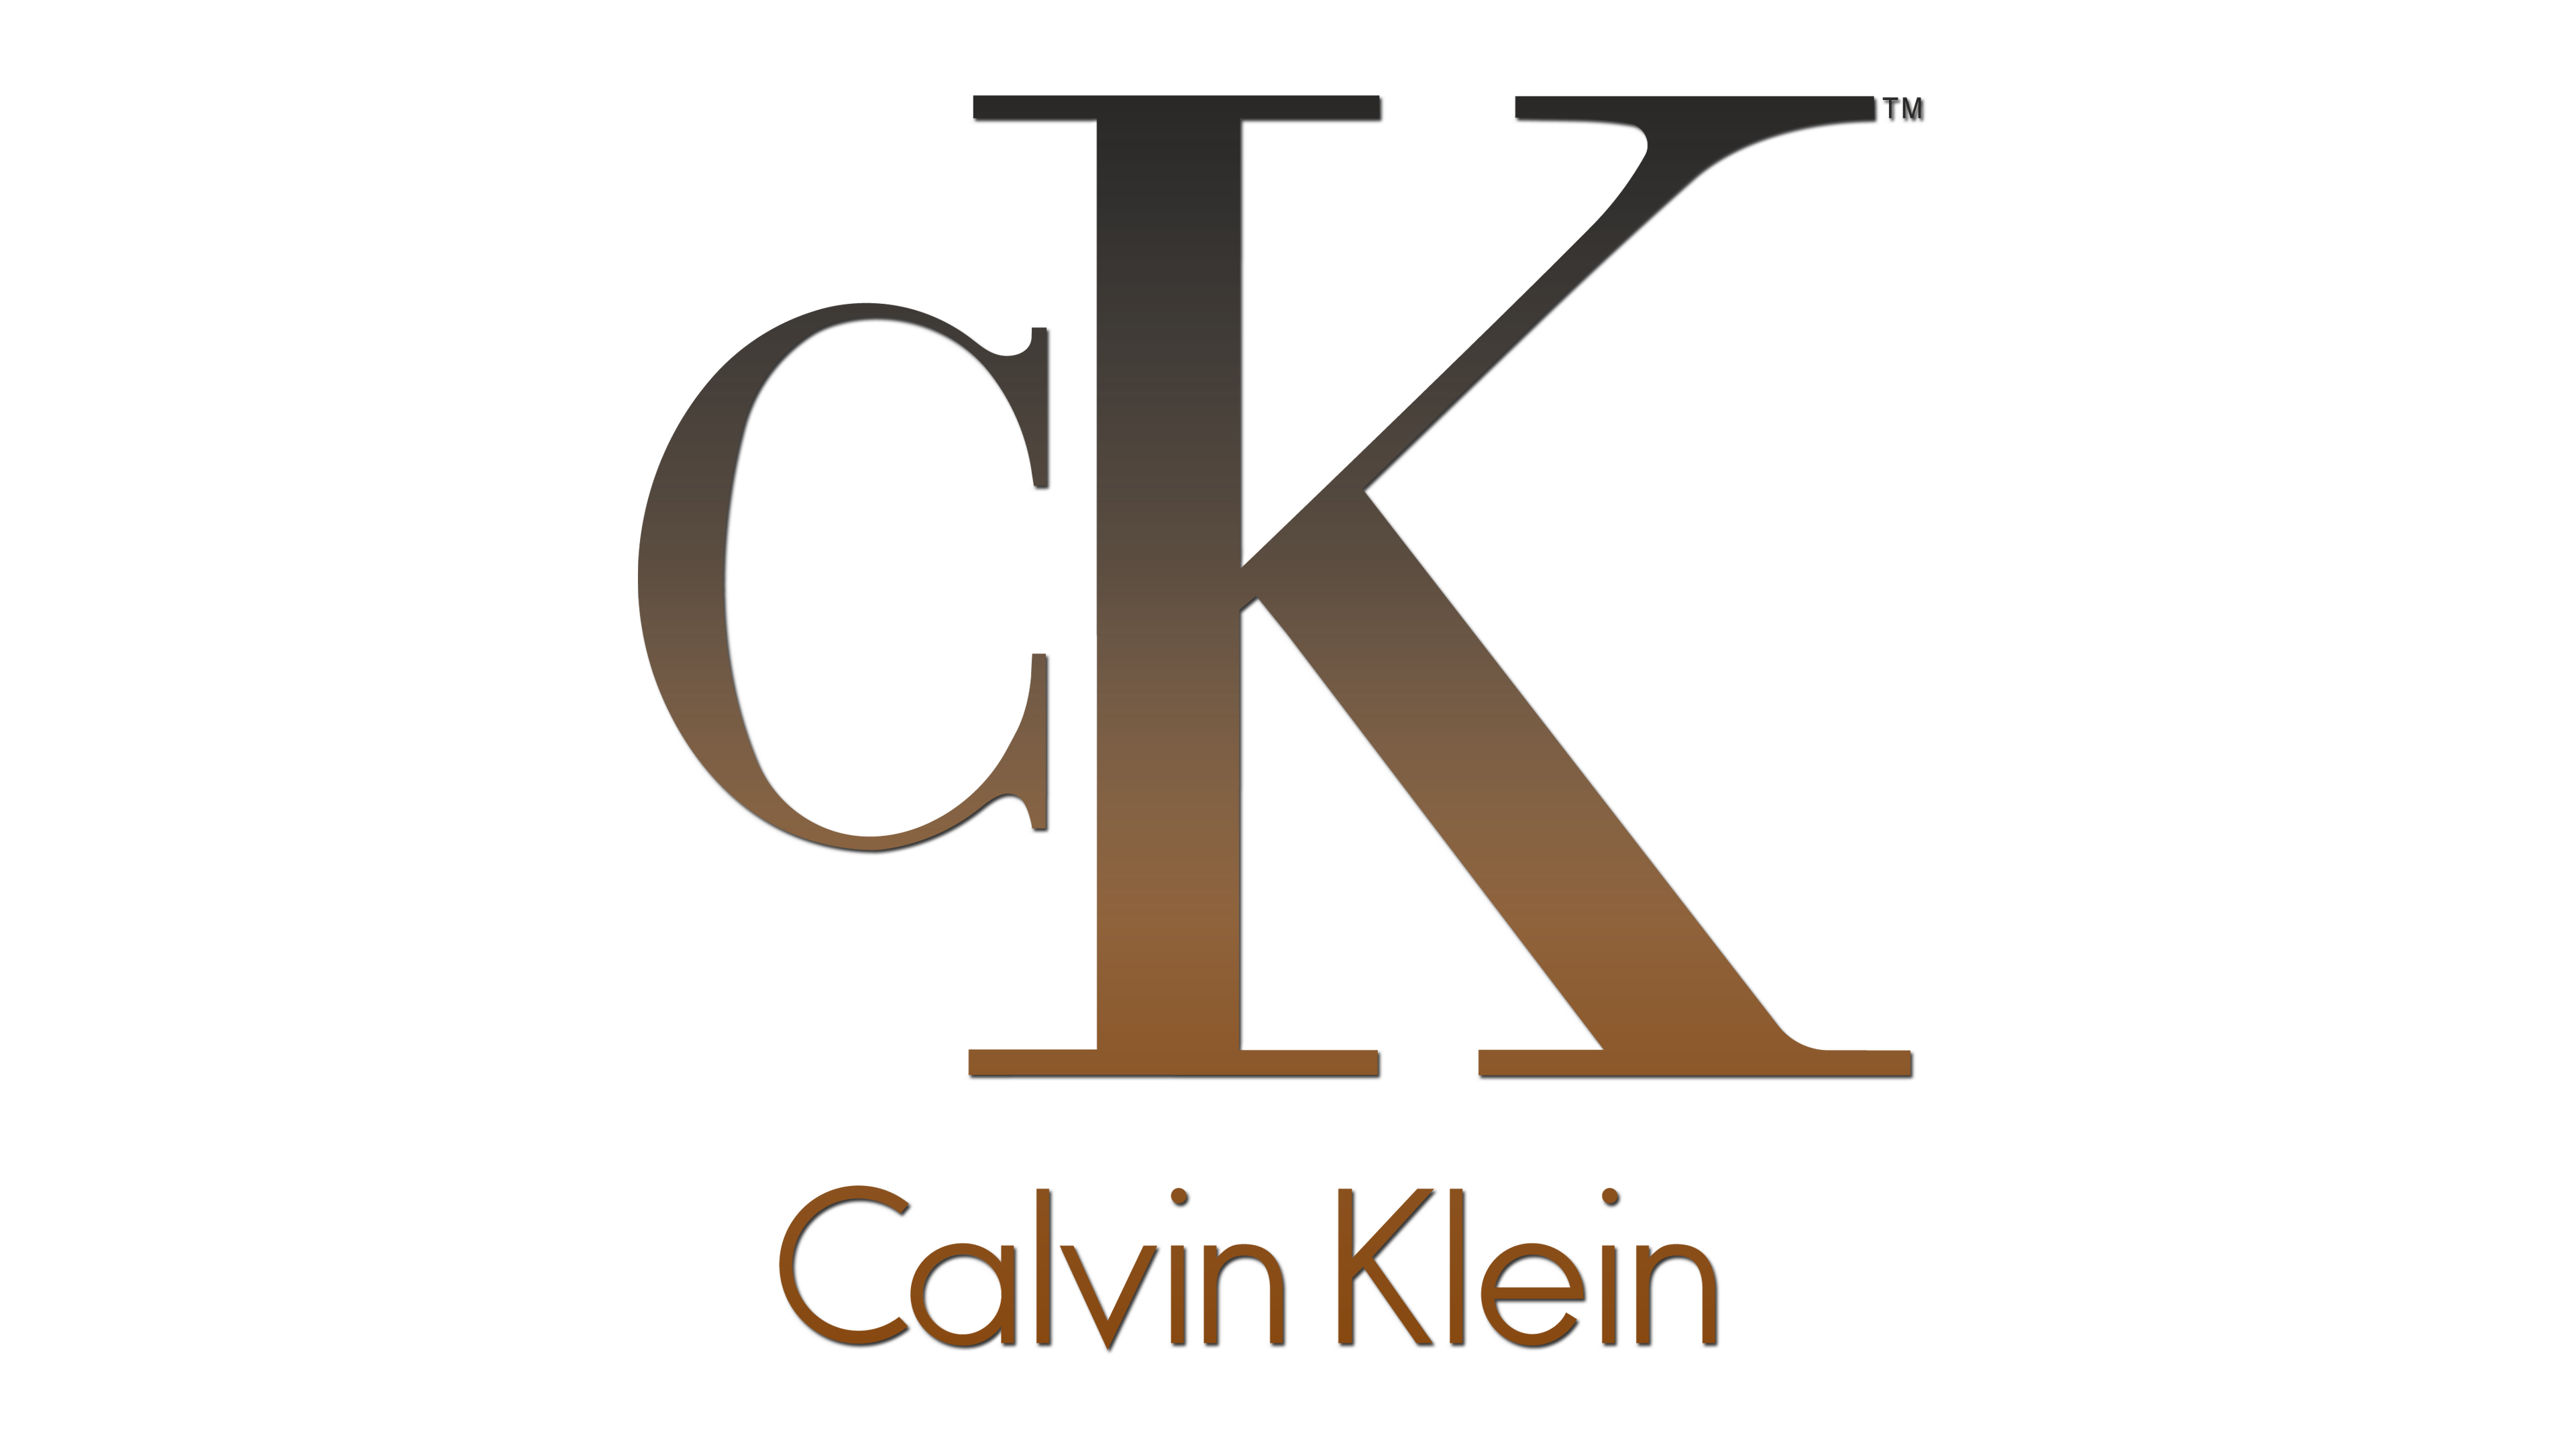 Ck calvin klein logo PNG descargar imagen